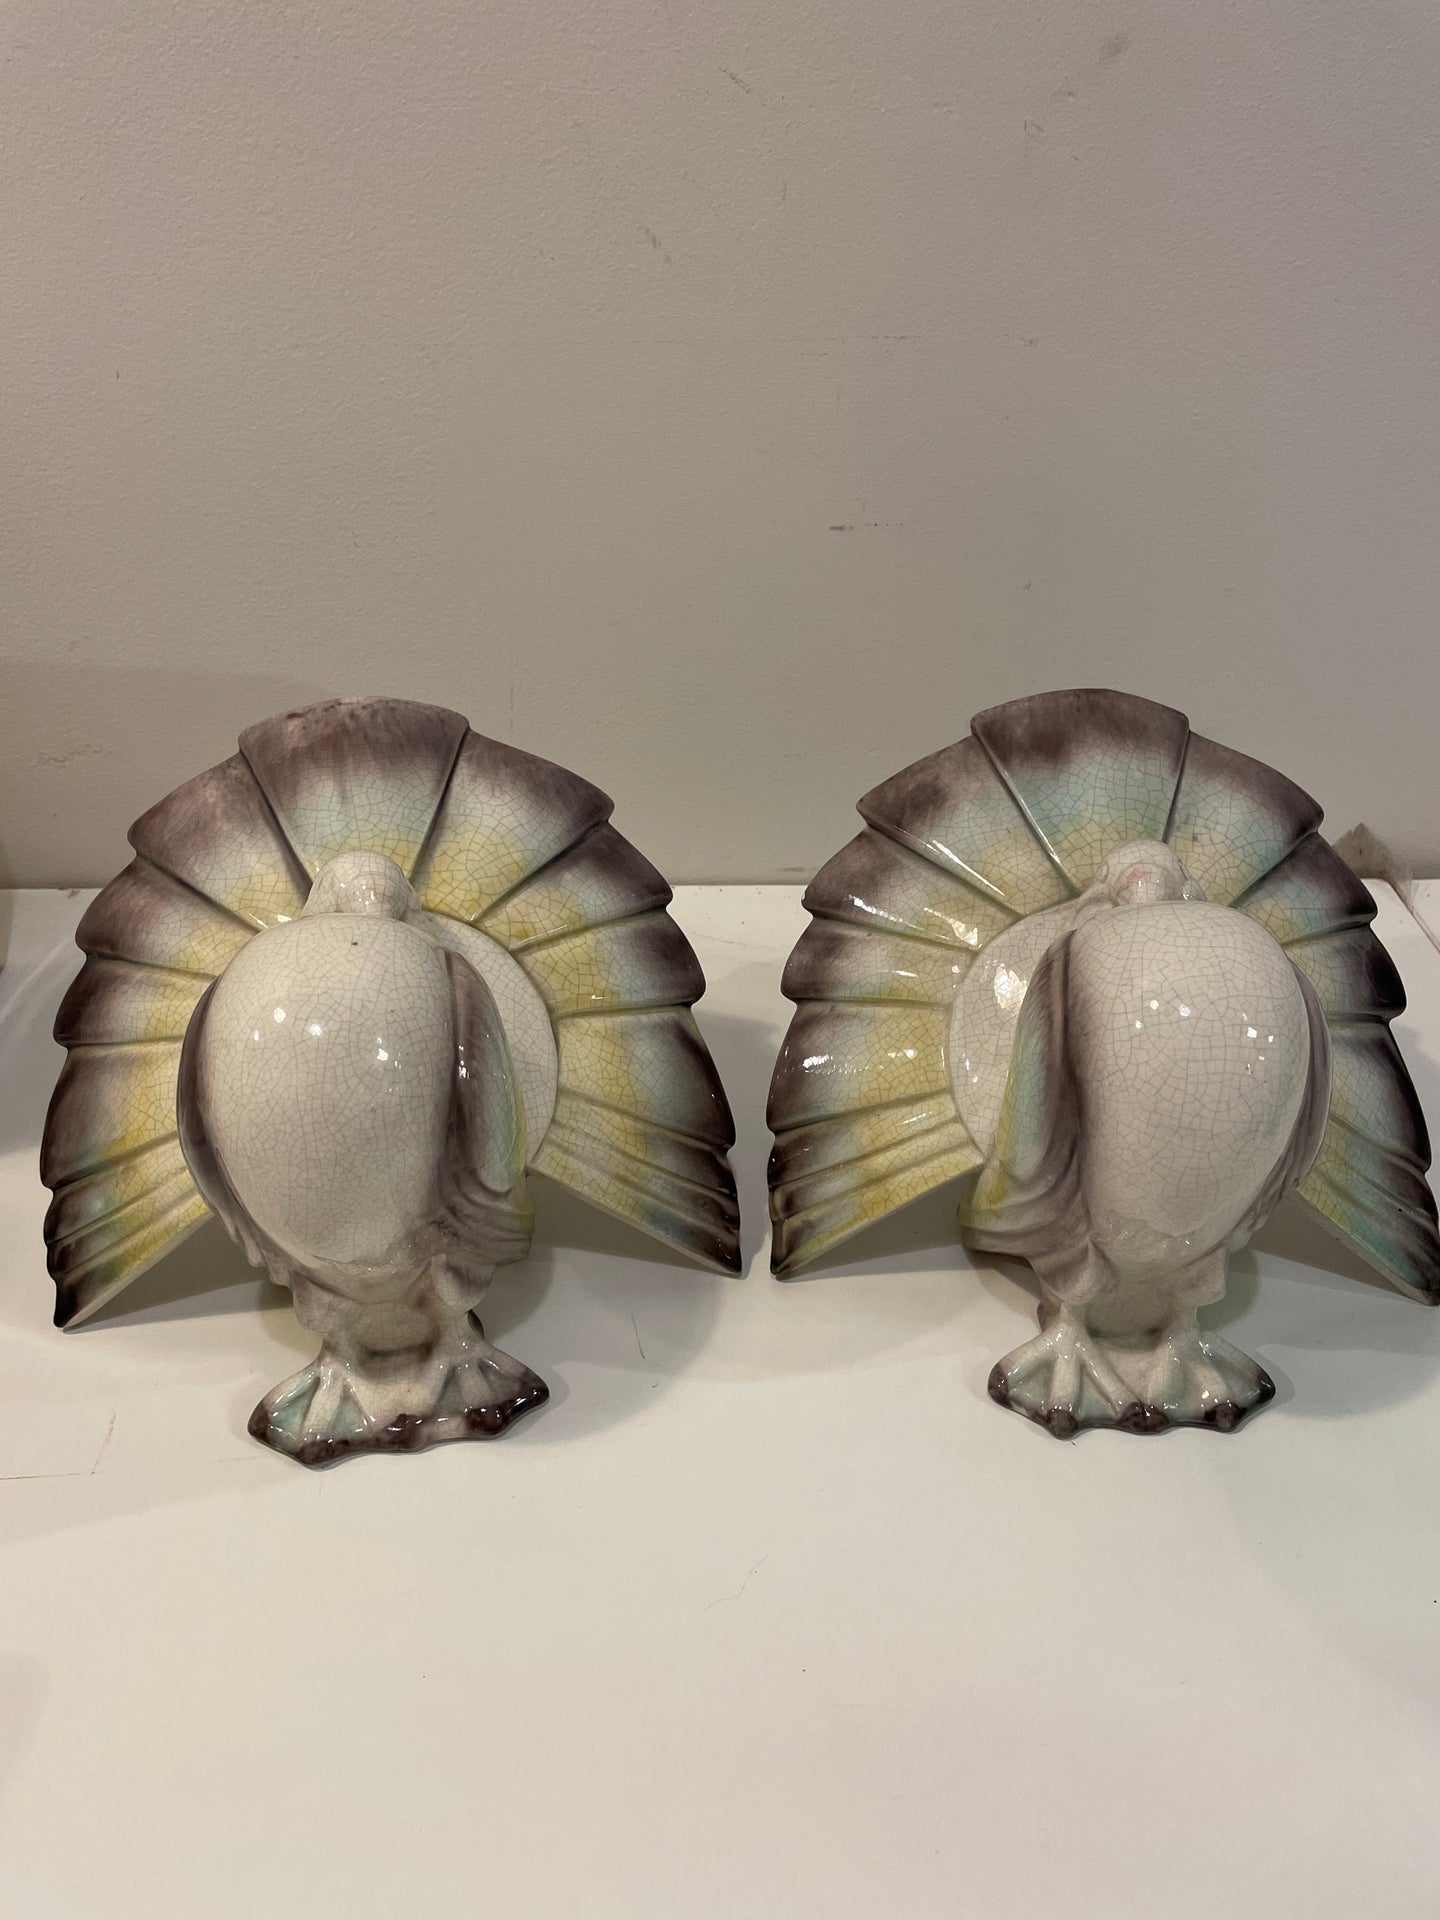 Pair of Ceramic Turkeys, Goldscheider Everlast Corp.